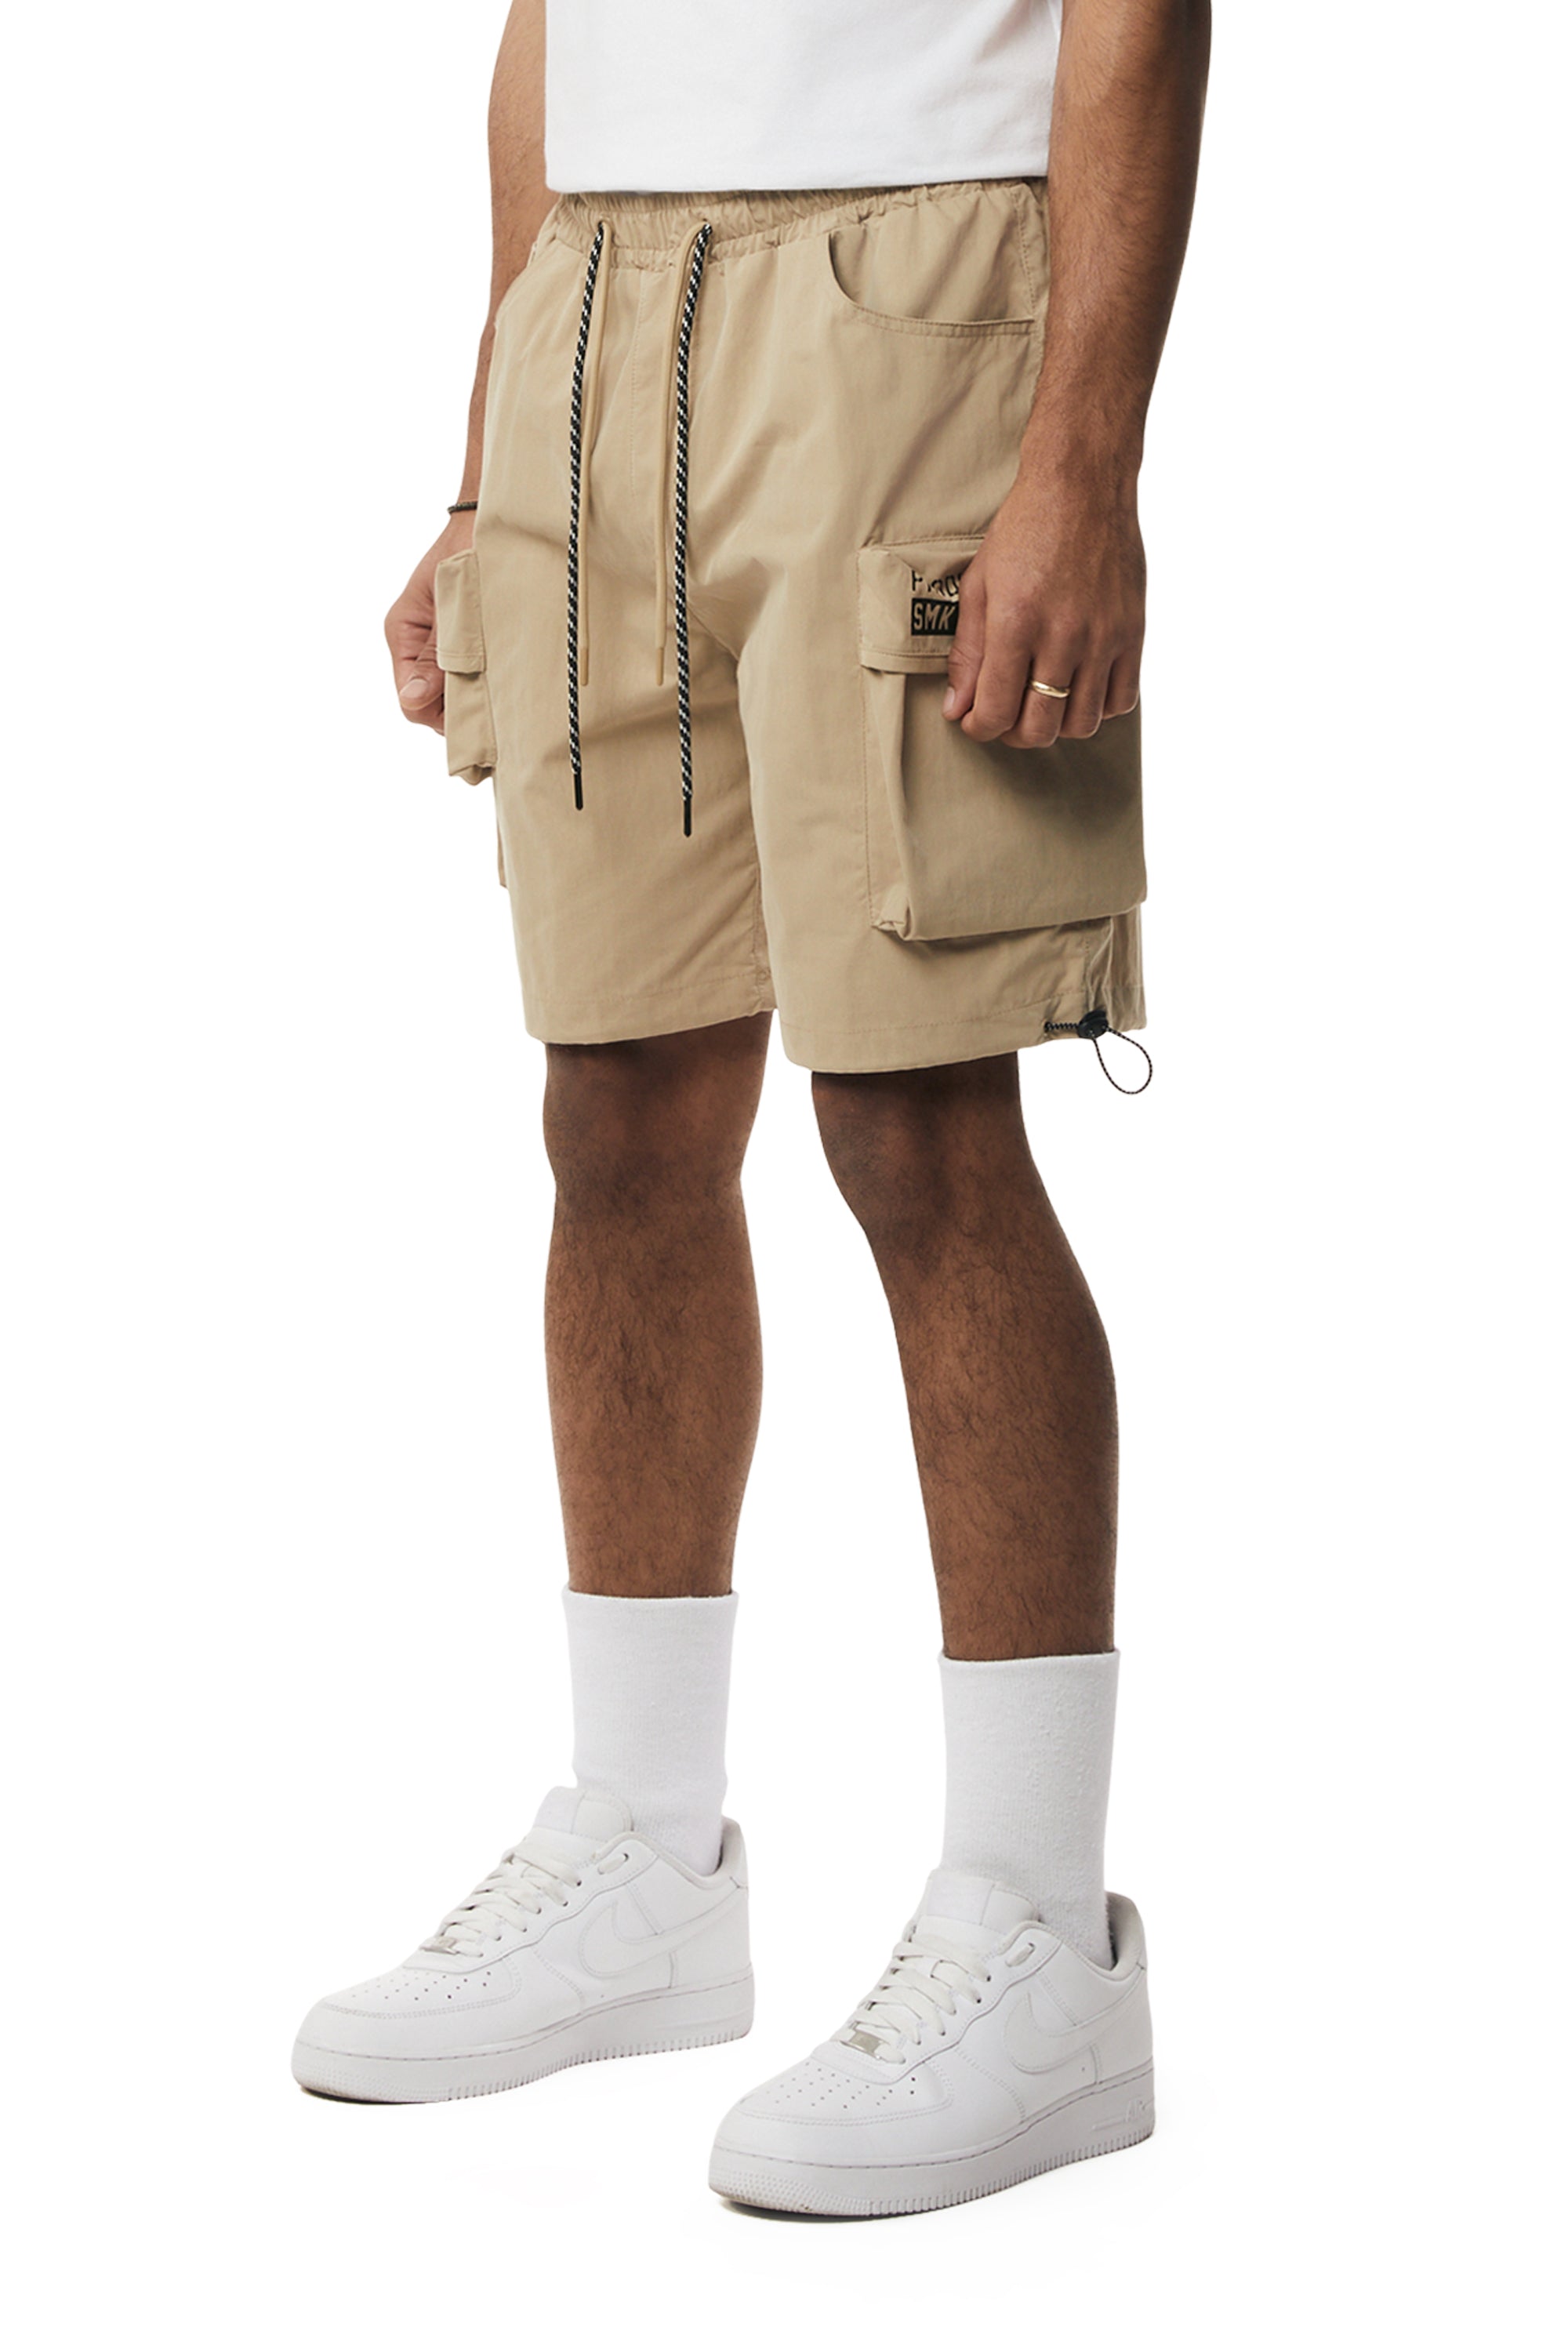 Brushed Cargo Shorts - Khaki